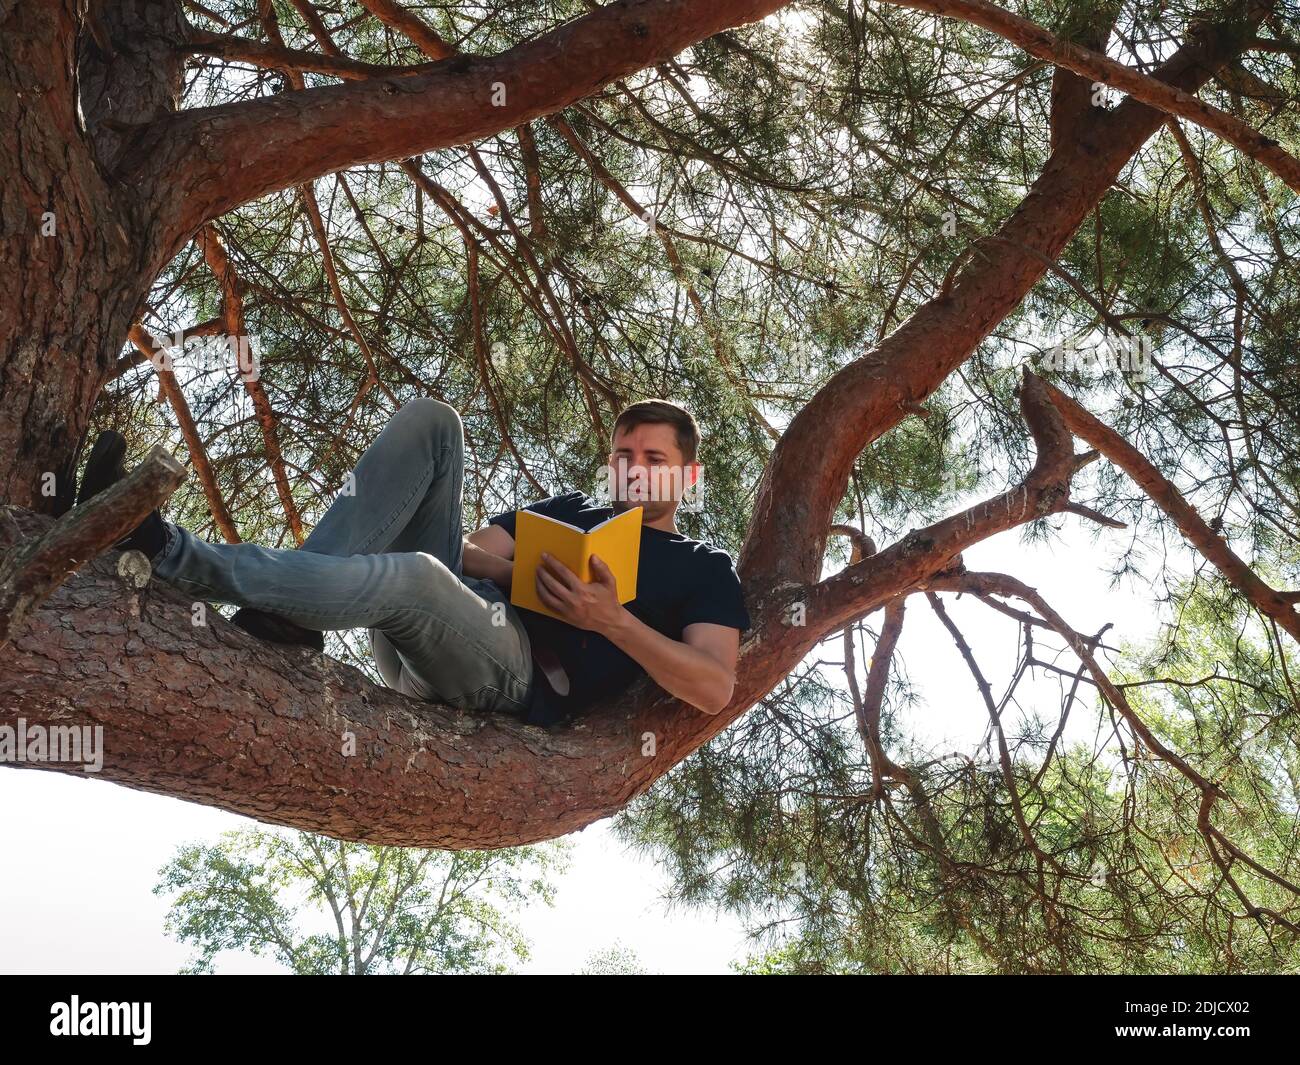 Attività ricreative estive all'aperto. Il ragazzo sta leggendo un libro mentre si siede su un ramo dell'albero. Foto Stock